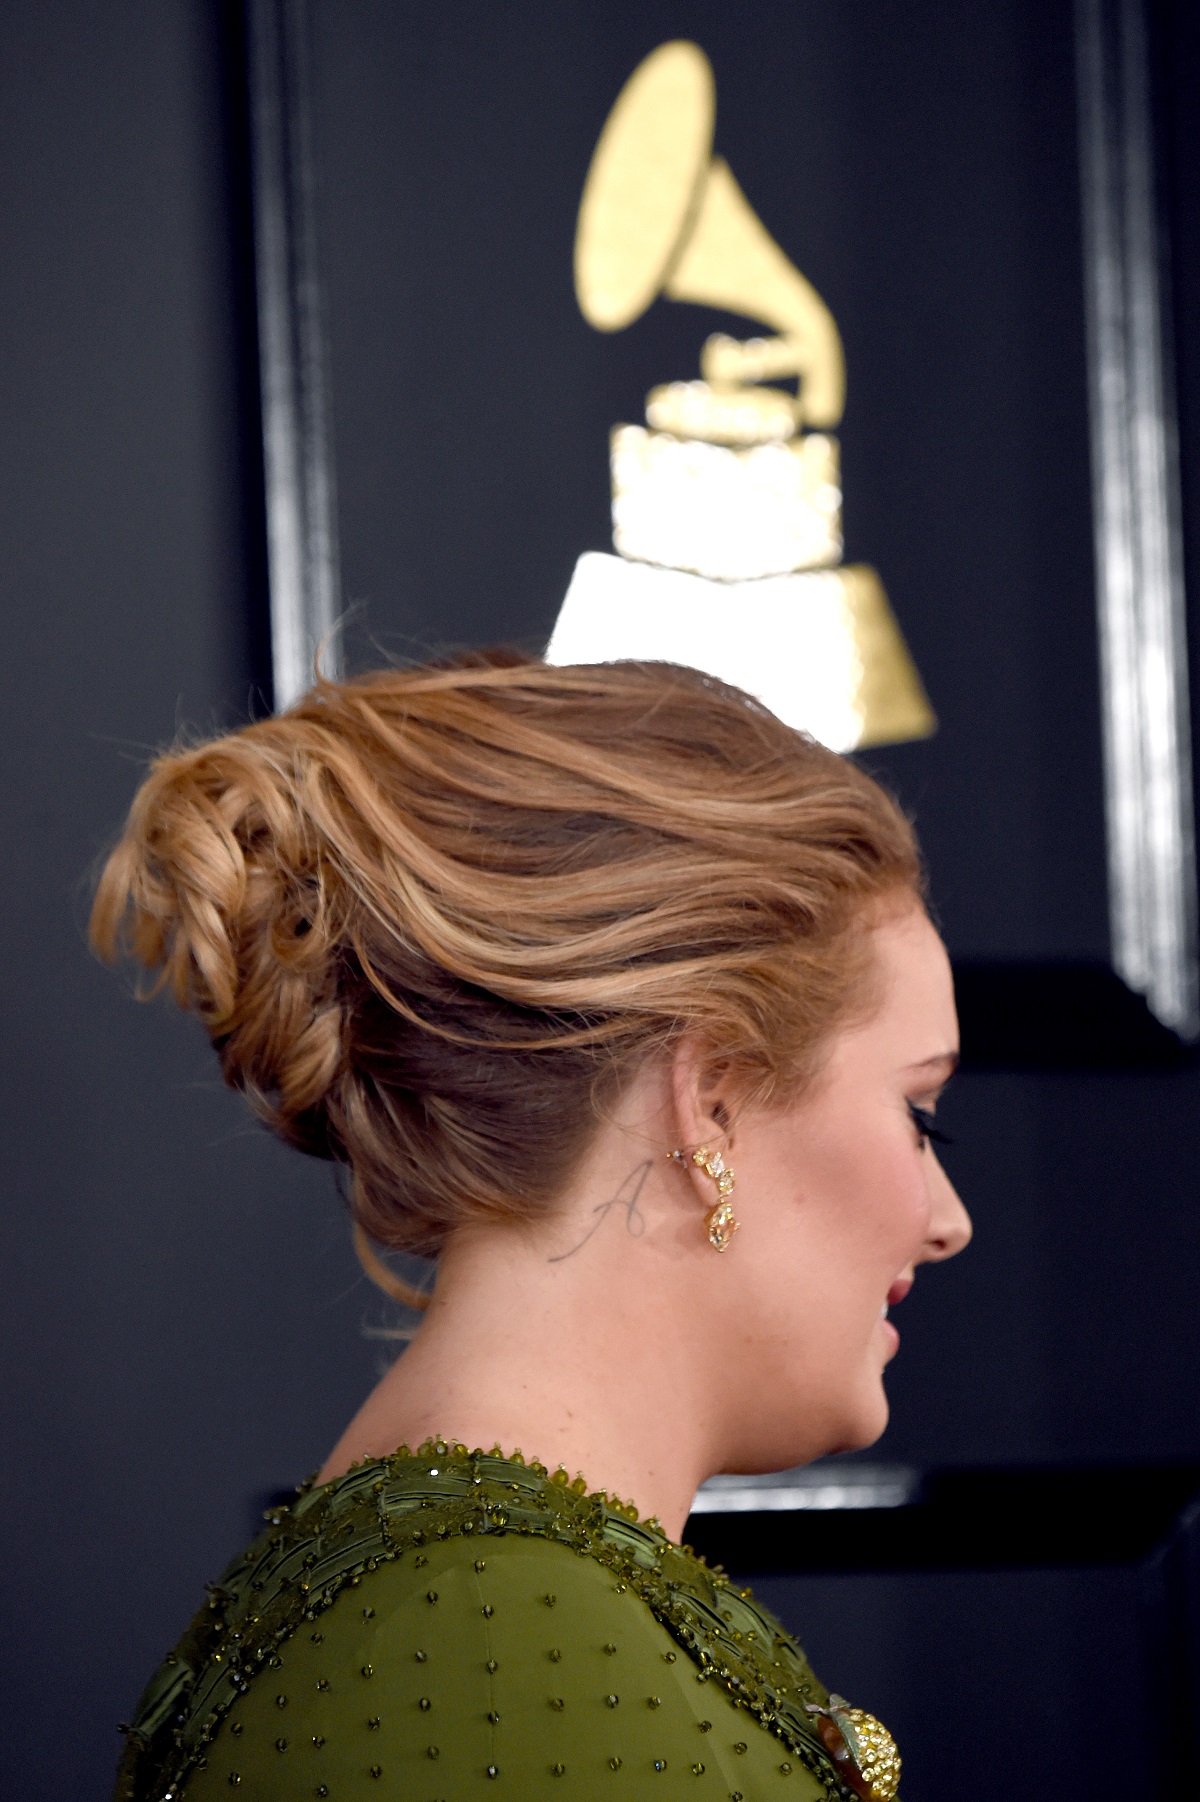 Portret cu Adele din profil având părul prins într-un coc, unde se poate observa tatuajul cu litera A după ureche